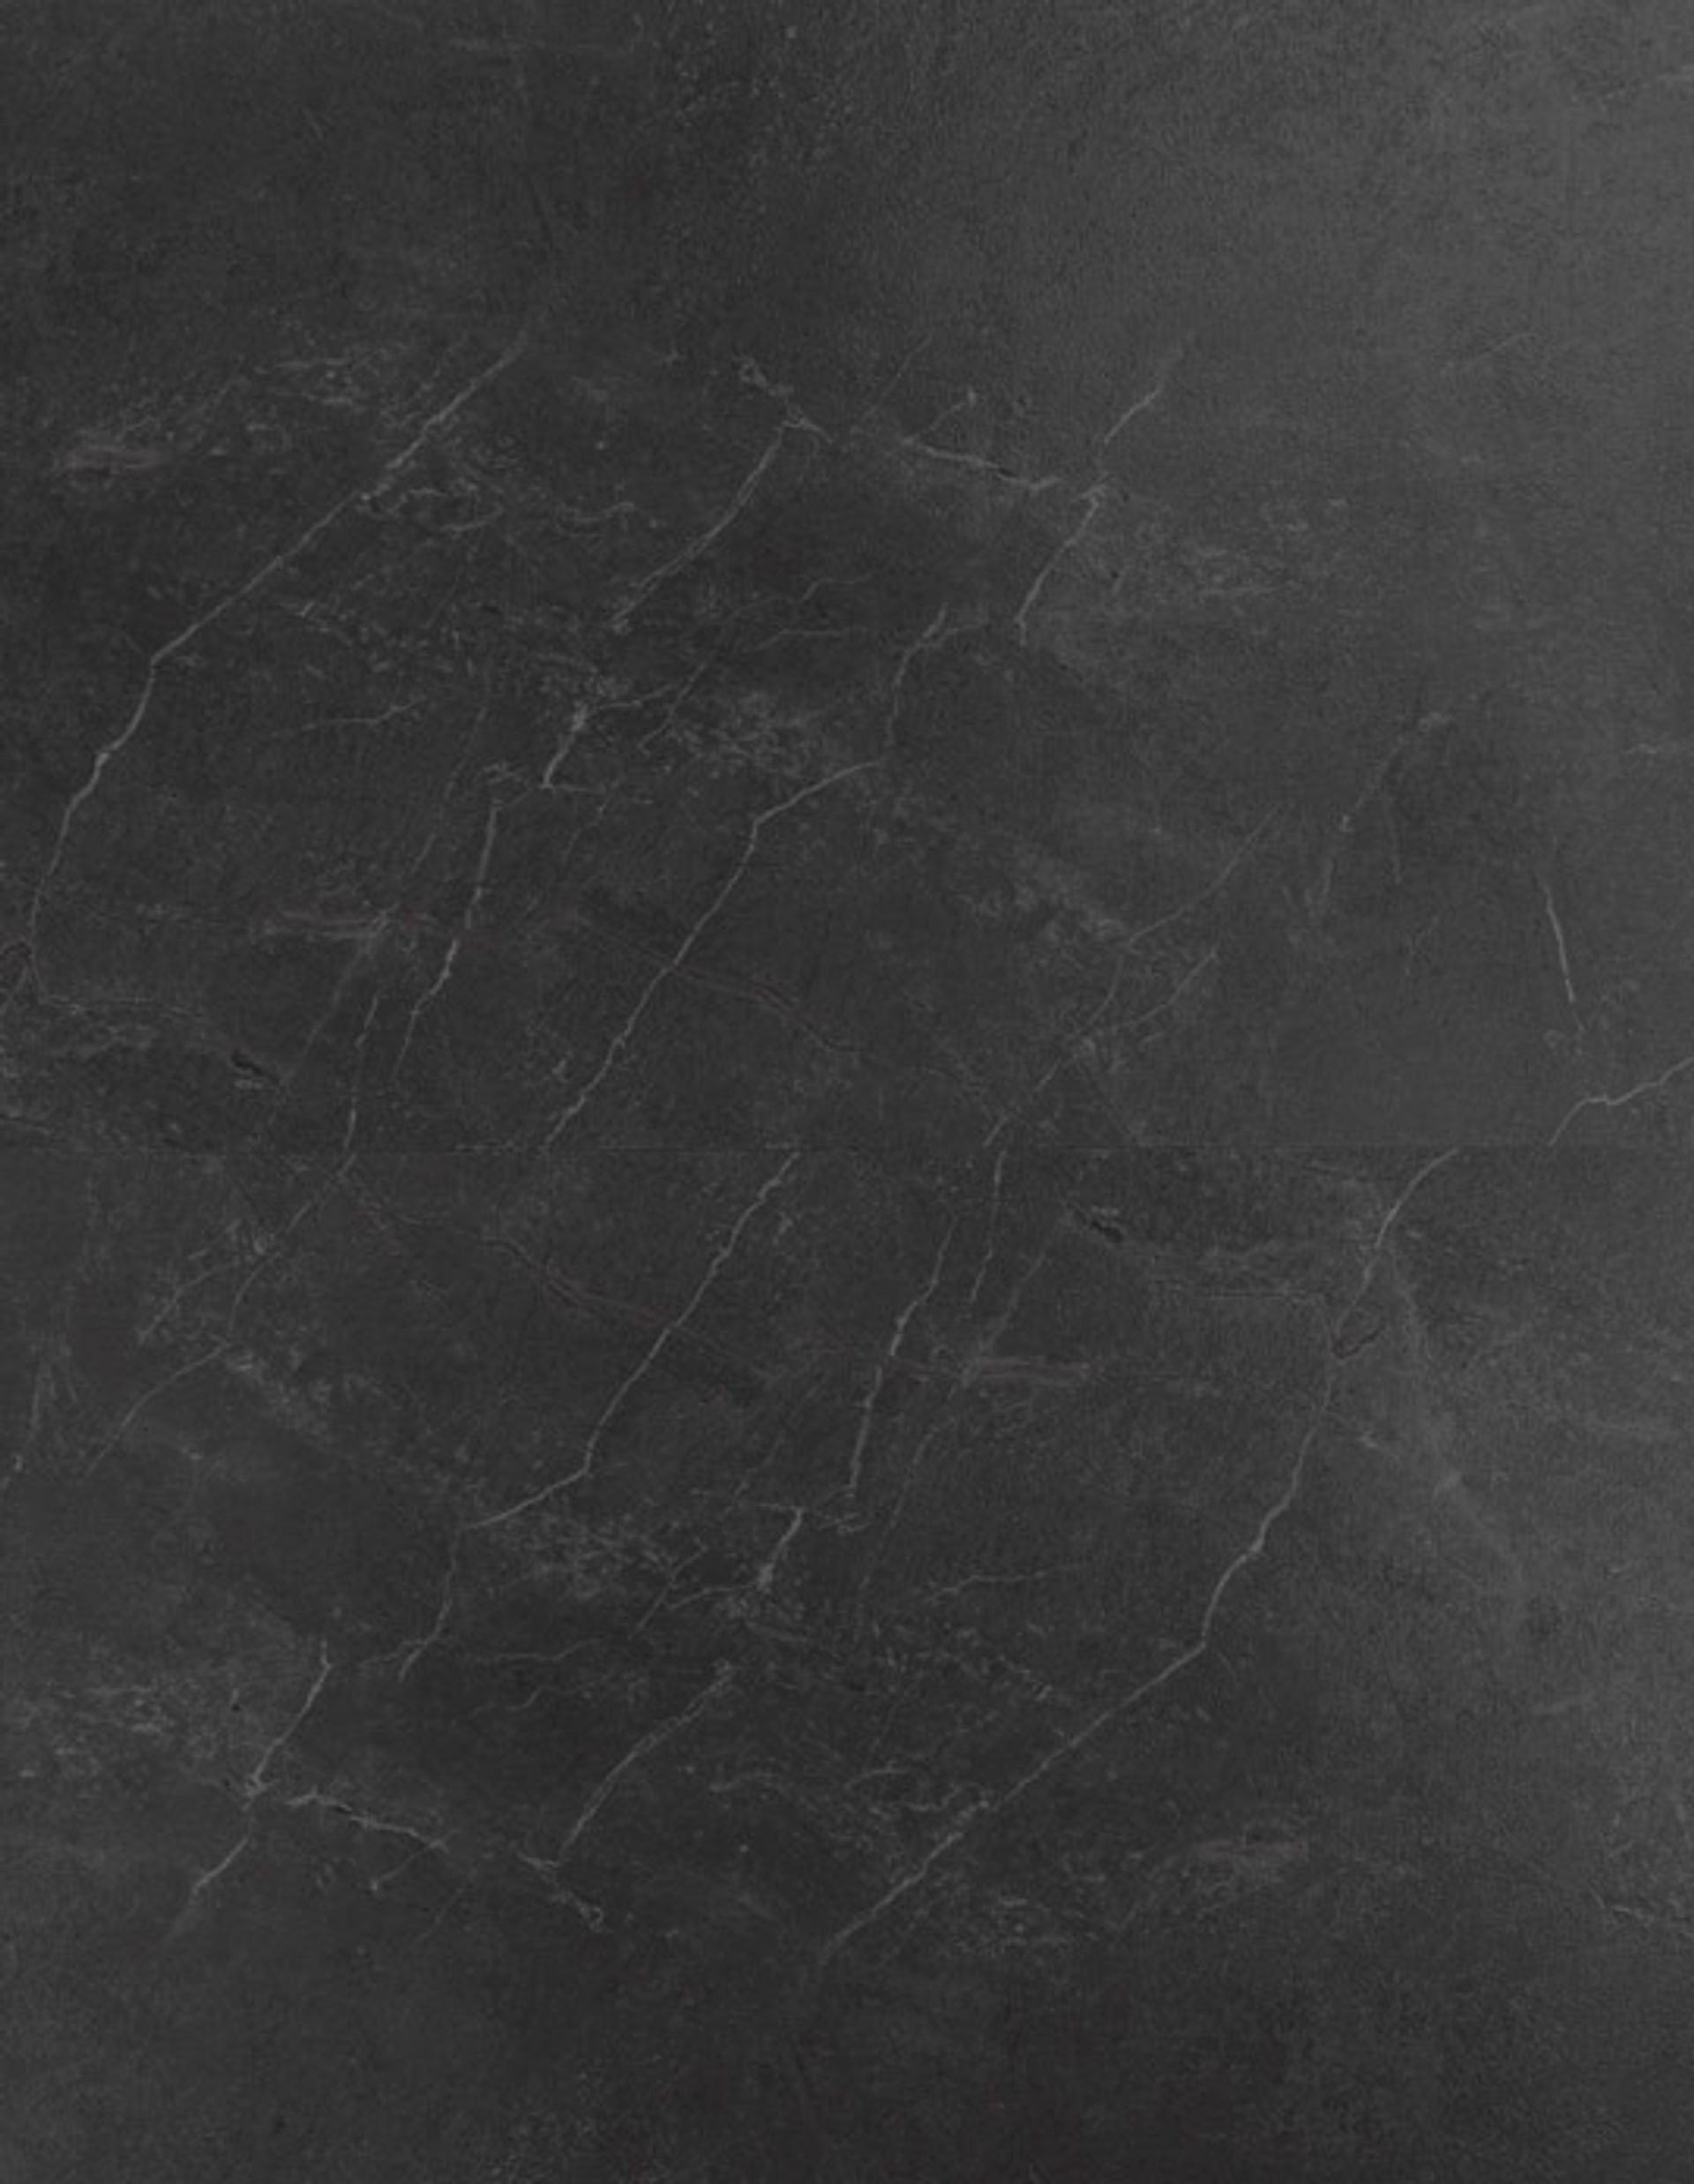 Sol vinyle CALDERA , Carrelage gris moyen, dalle 61.50 x 123.00 cm